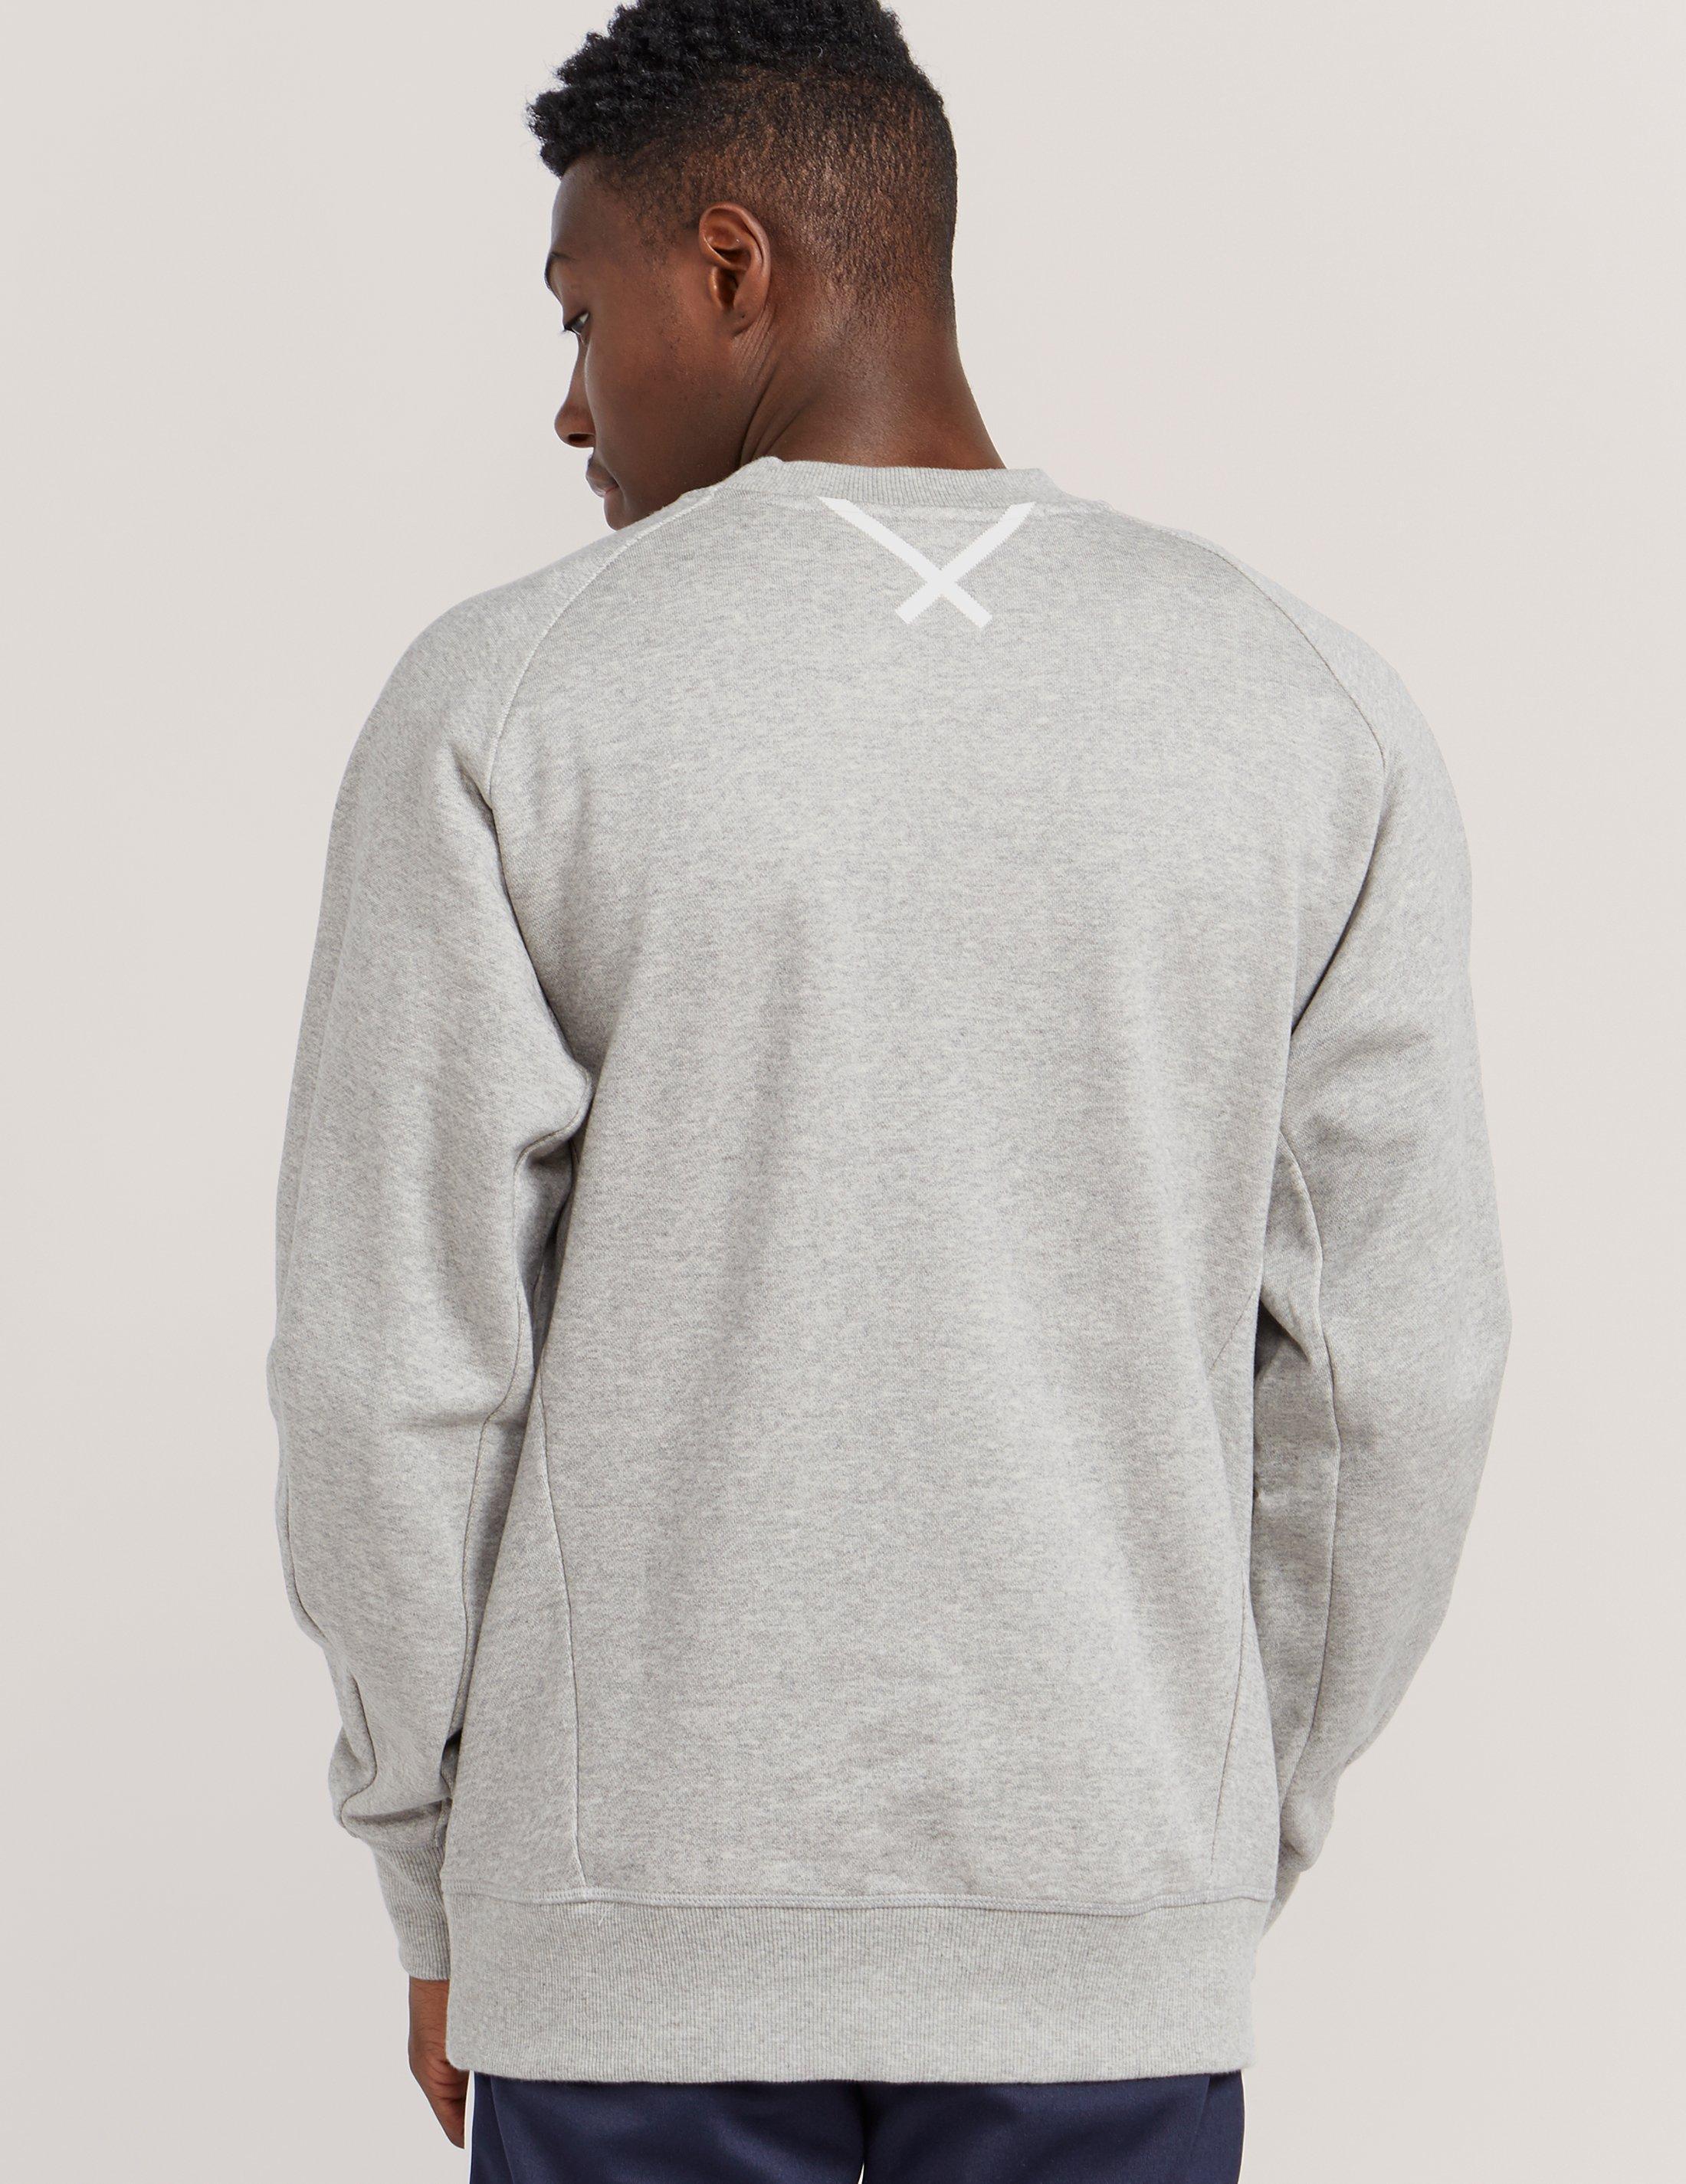 adidas Originals Xbyo Sweatshirt in Grey (Gray) for Men - Lyst